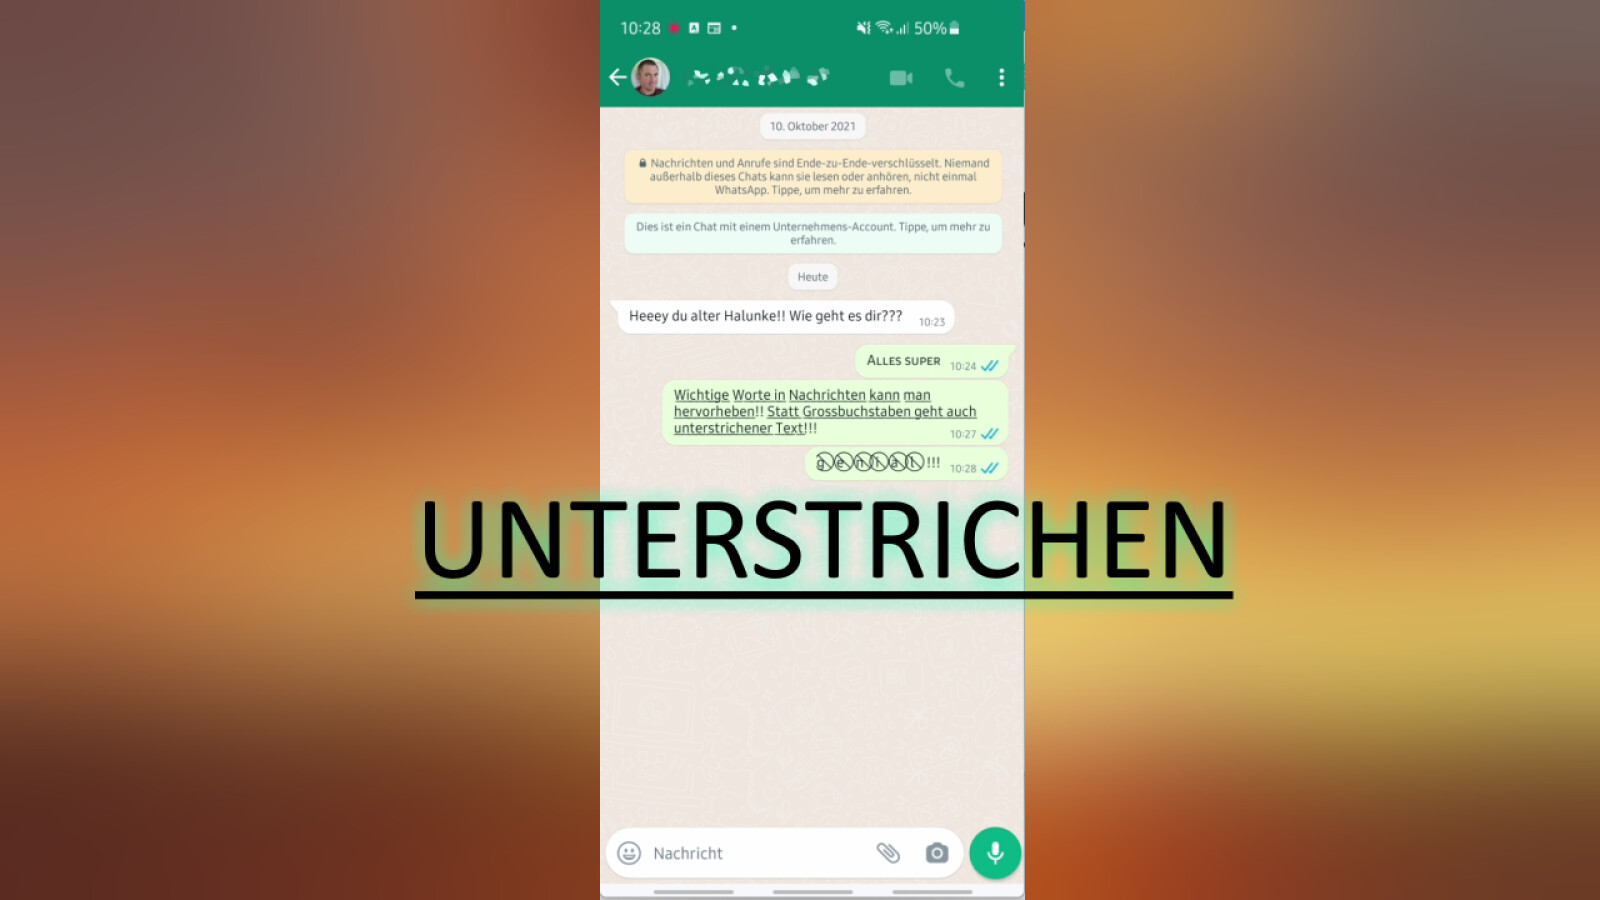 whatsapp-text-unterstreichen-in-chats-so-geht-s-netzwelt